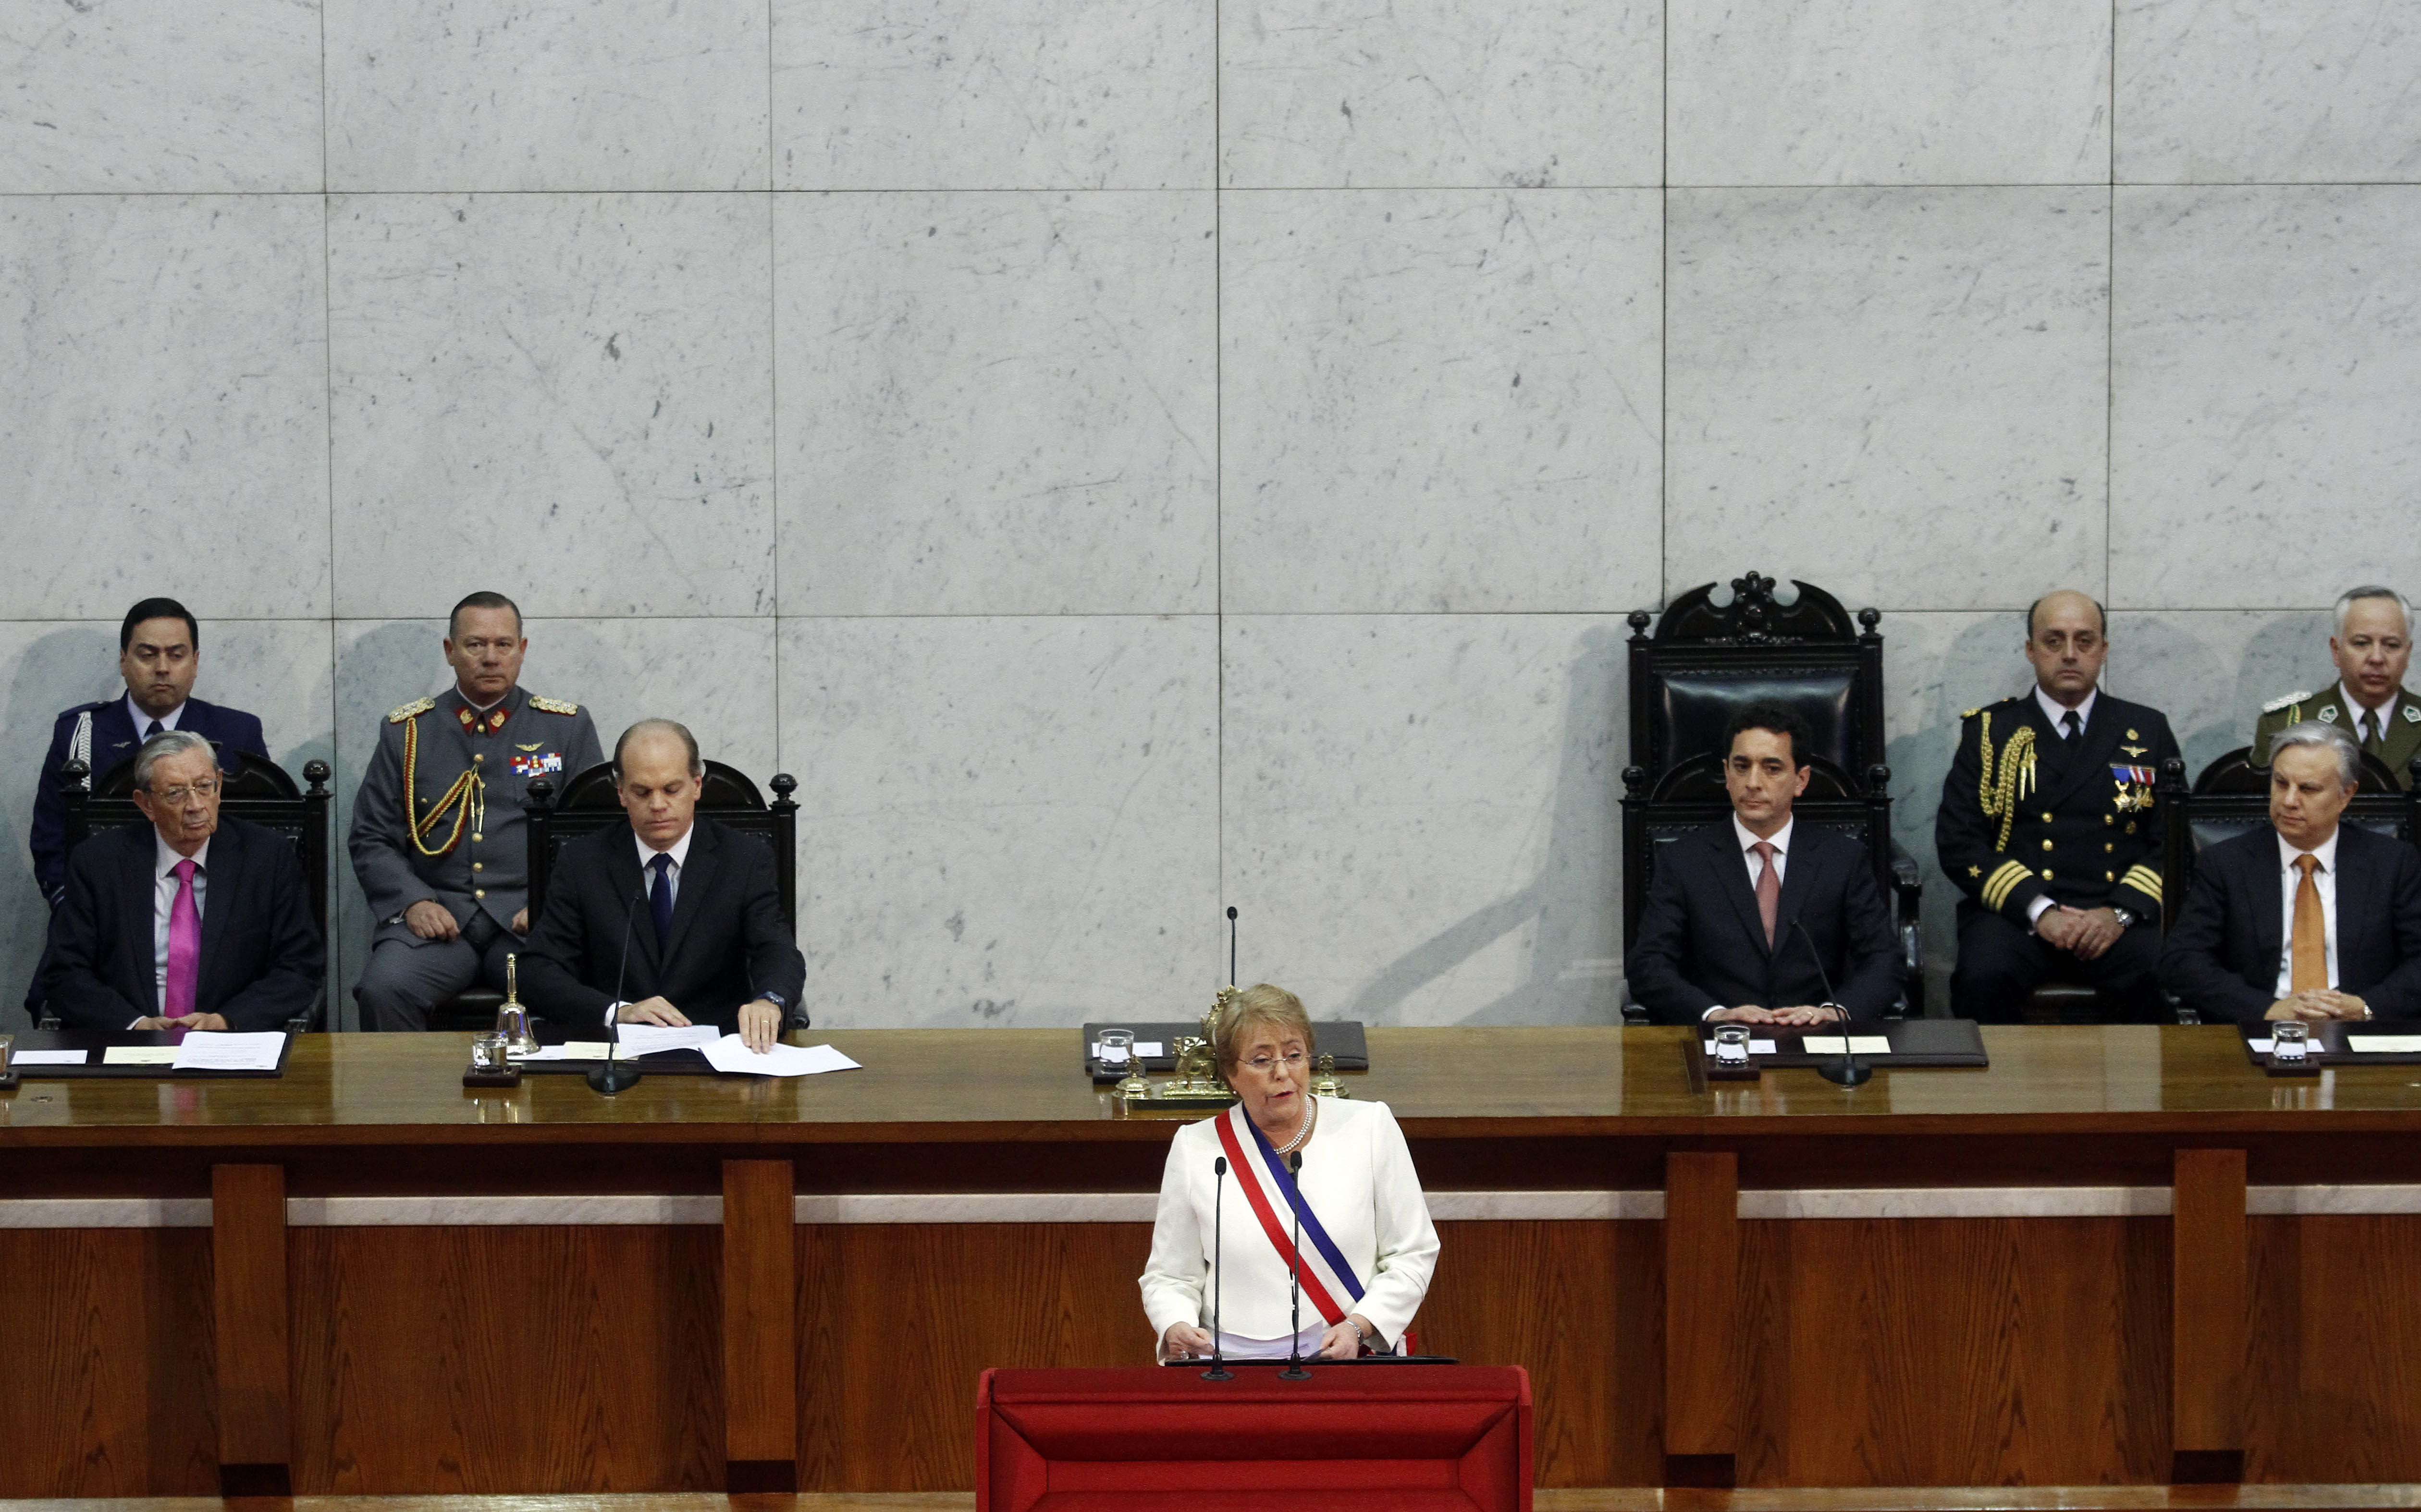 21 de Mayo de 2015/VALPARAISO La presidenta, Michelle Bachelet, realiza su segunda Cuenta Pública al país y ante la Sesión del Congreso Pleno en el salón plenario del Congreso Nacional  FOTO:RODRIGO SÀENZ/AGENCIAUNO